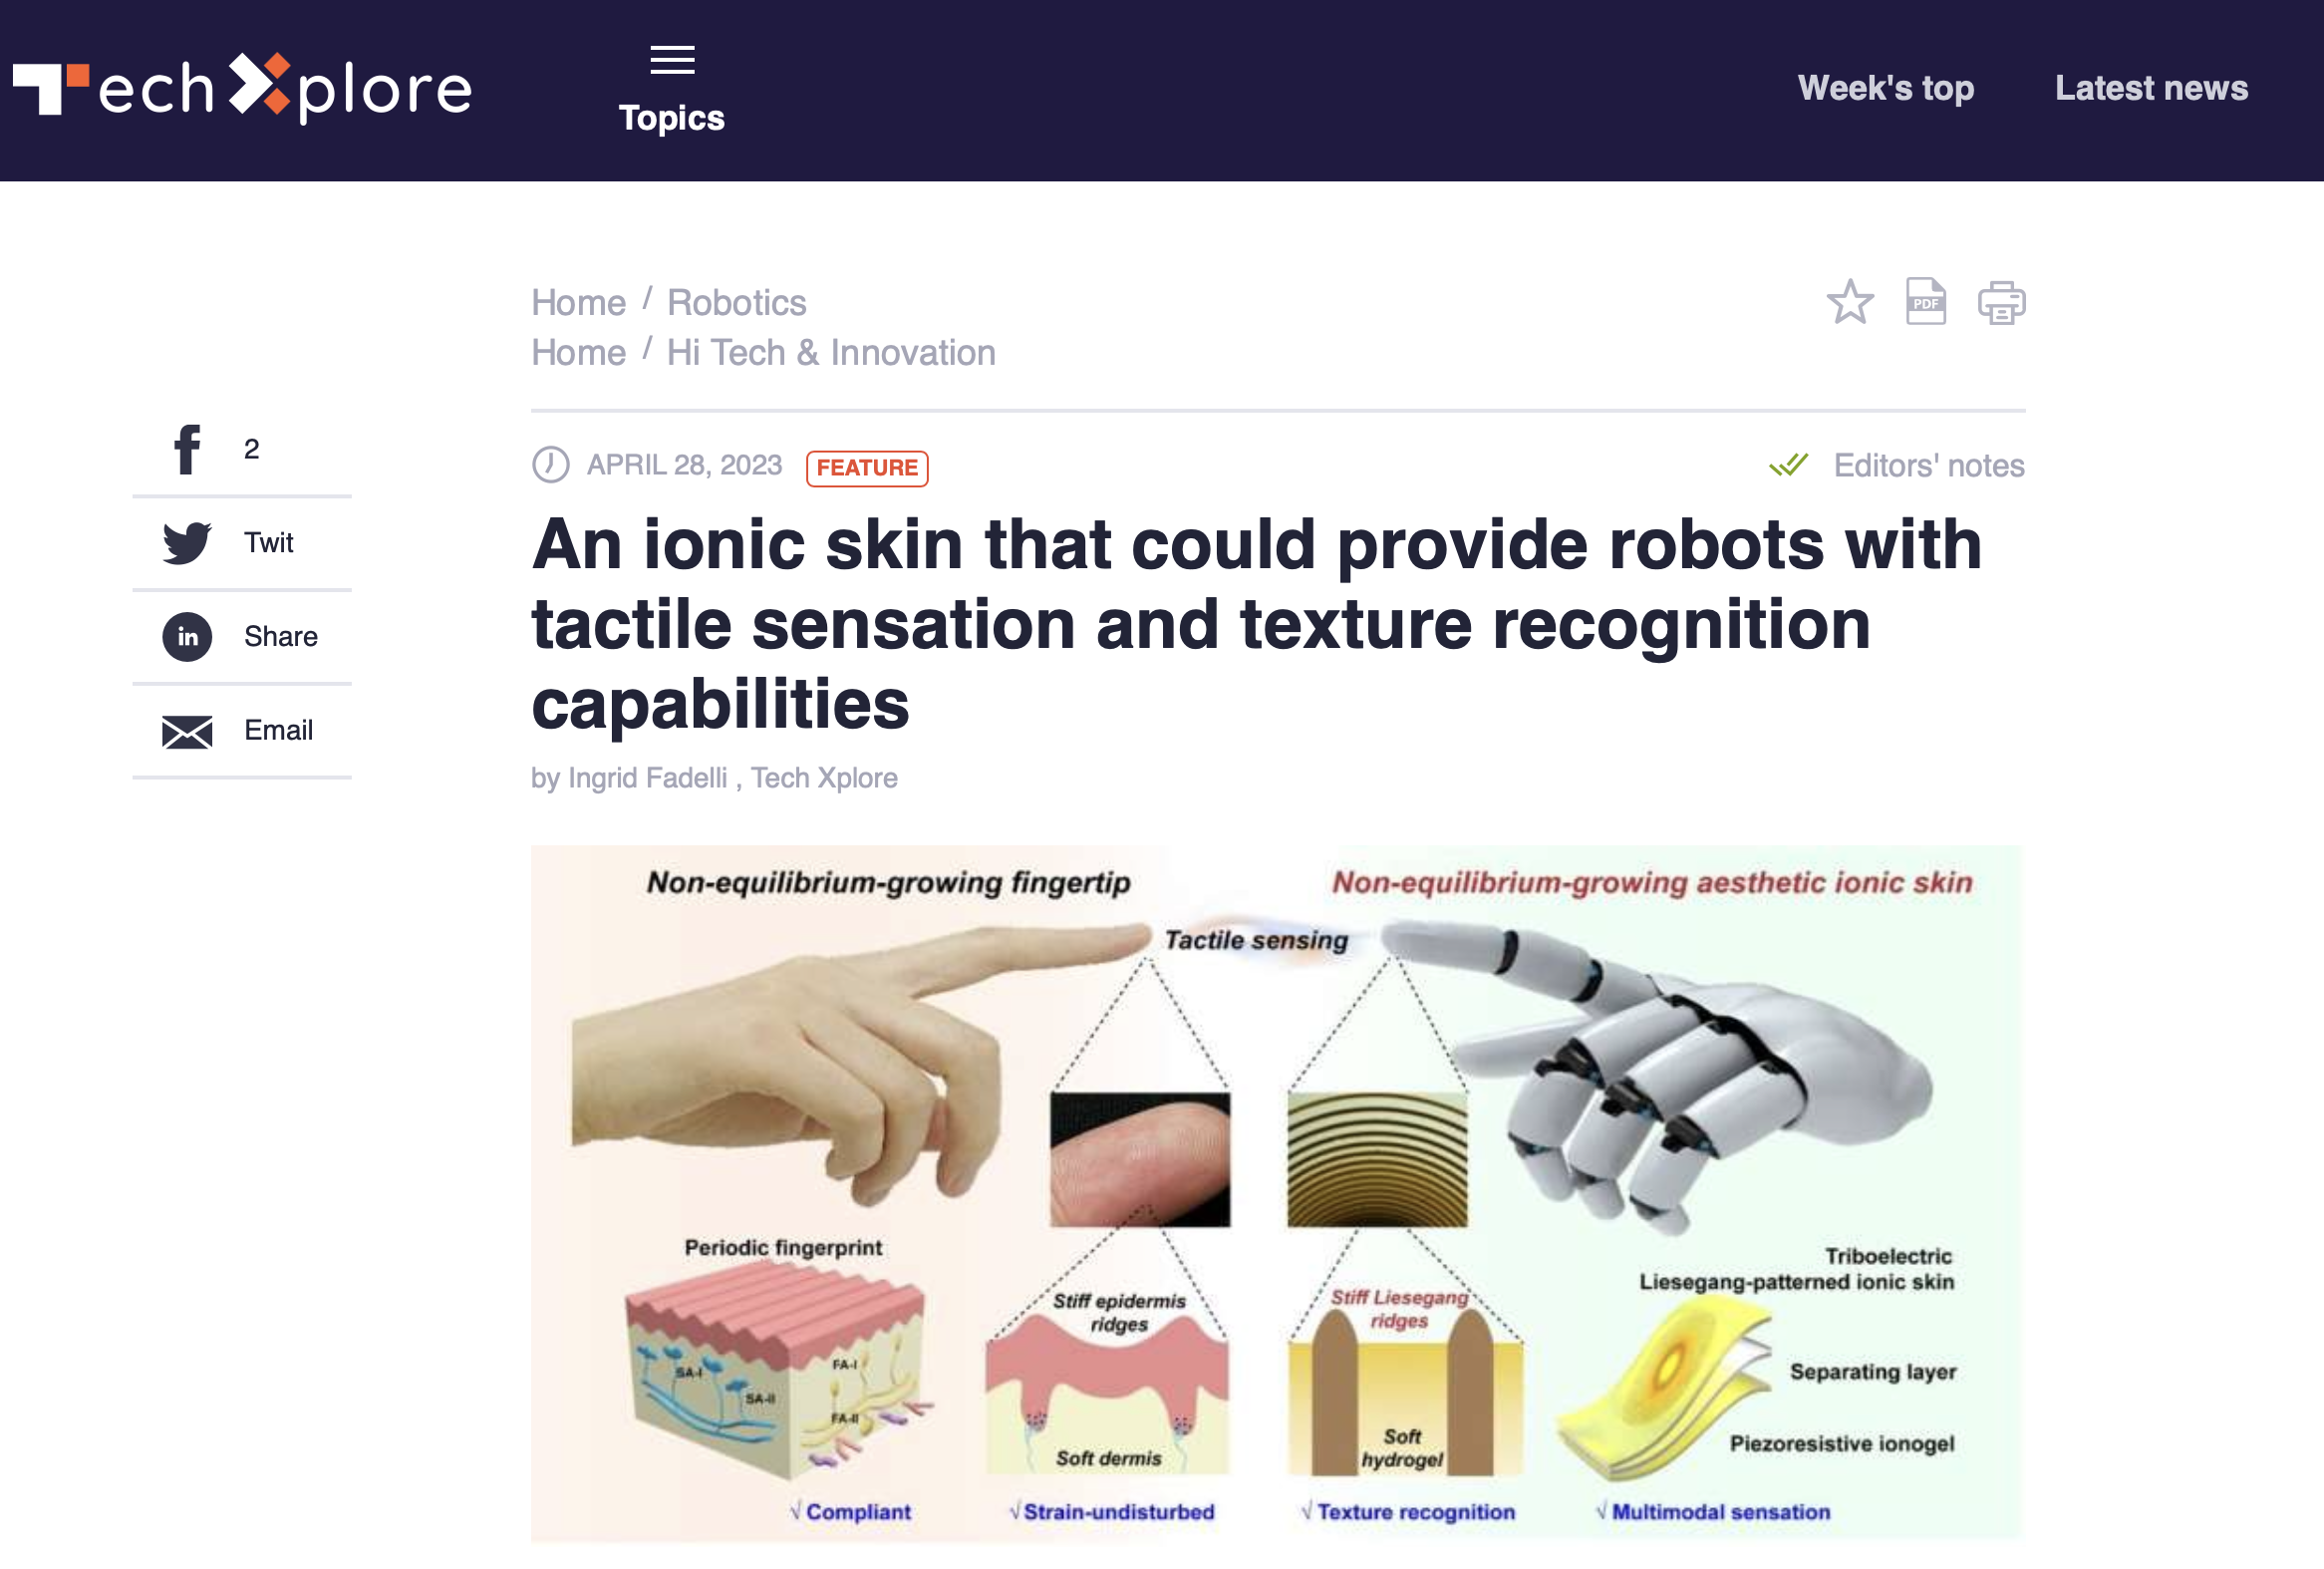 模拟人体离子传输机制 仿生皮肤可进行自我愈合 - 生物医药 - 中国高新网 - 中国高新技术产业导报